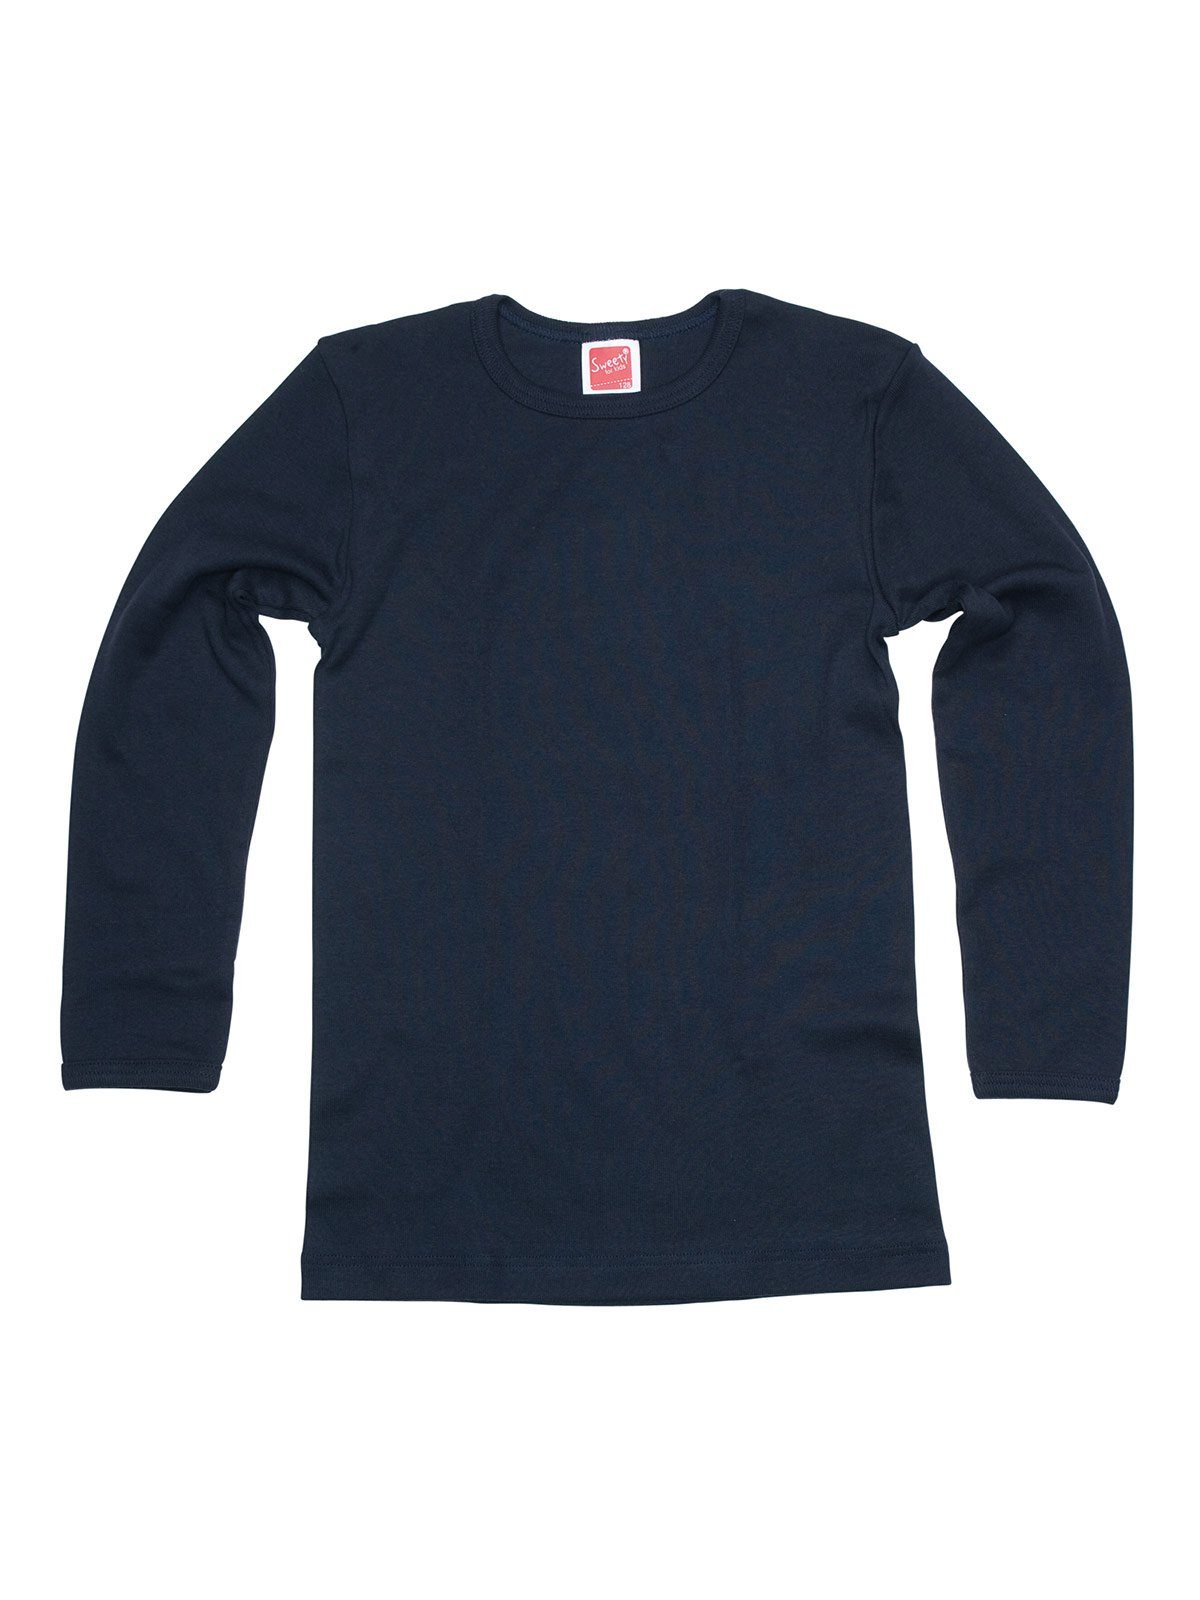 4er Achselhemd Kinder Shirt Sparpack hohe Markenqualität (Spar-Set, Sweety 4-St) for Winterwäsche navy Kids